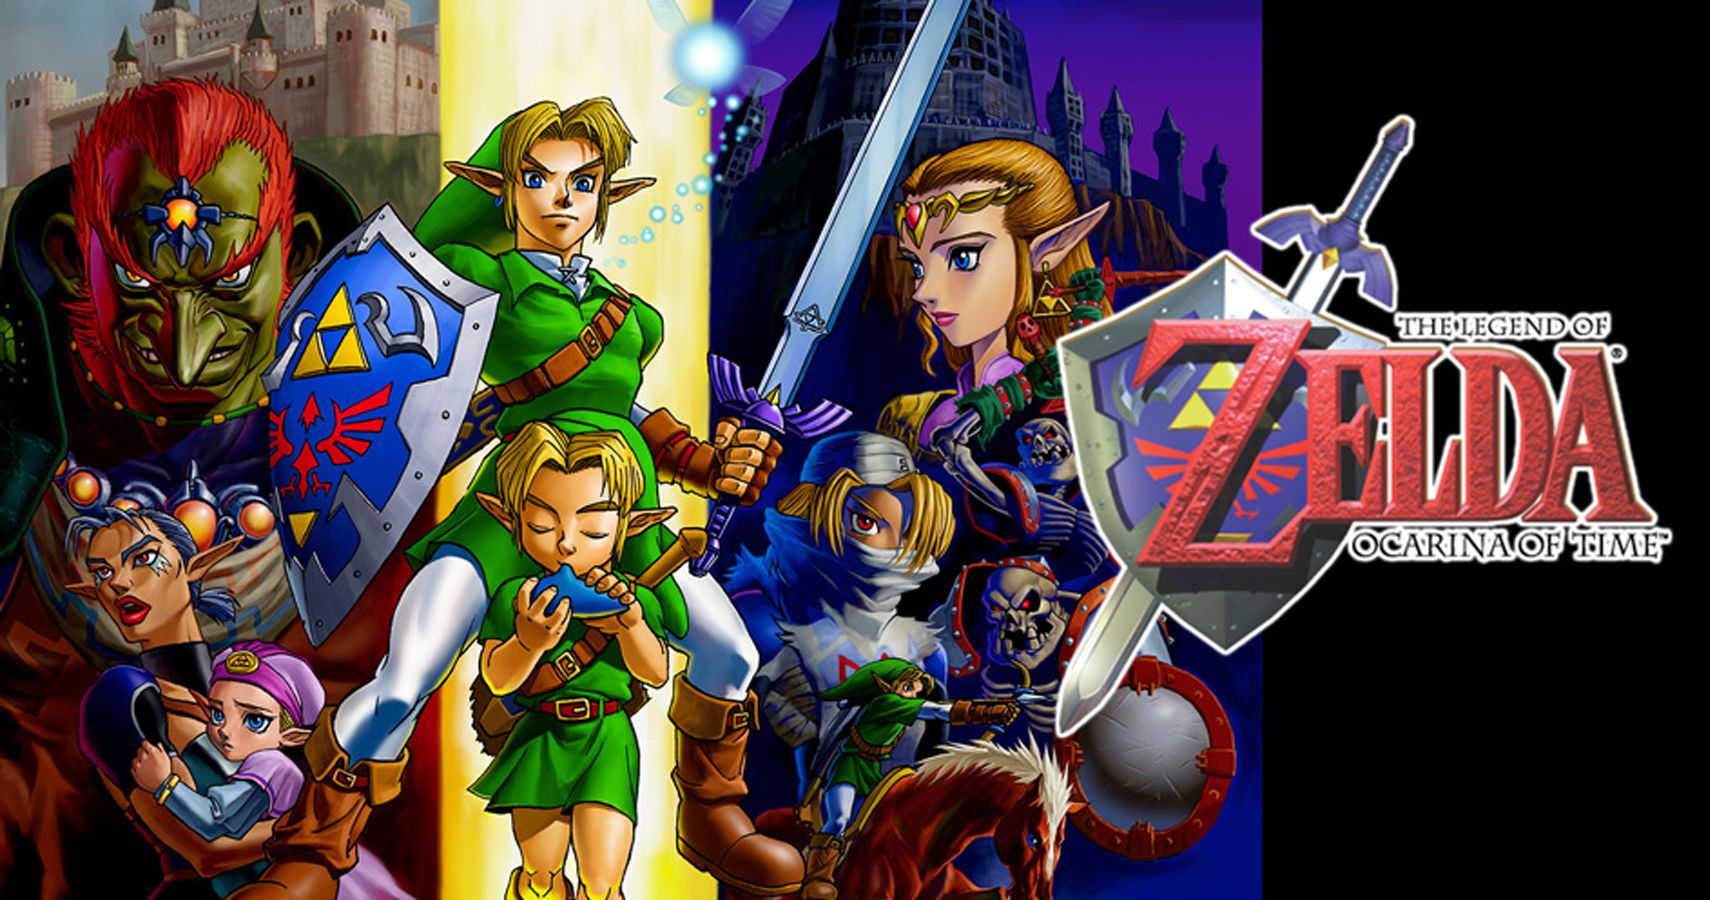 LEGO - Legend of Zelda: Iron Knuckle Encounter. NEEEEEEEEEEEEEED